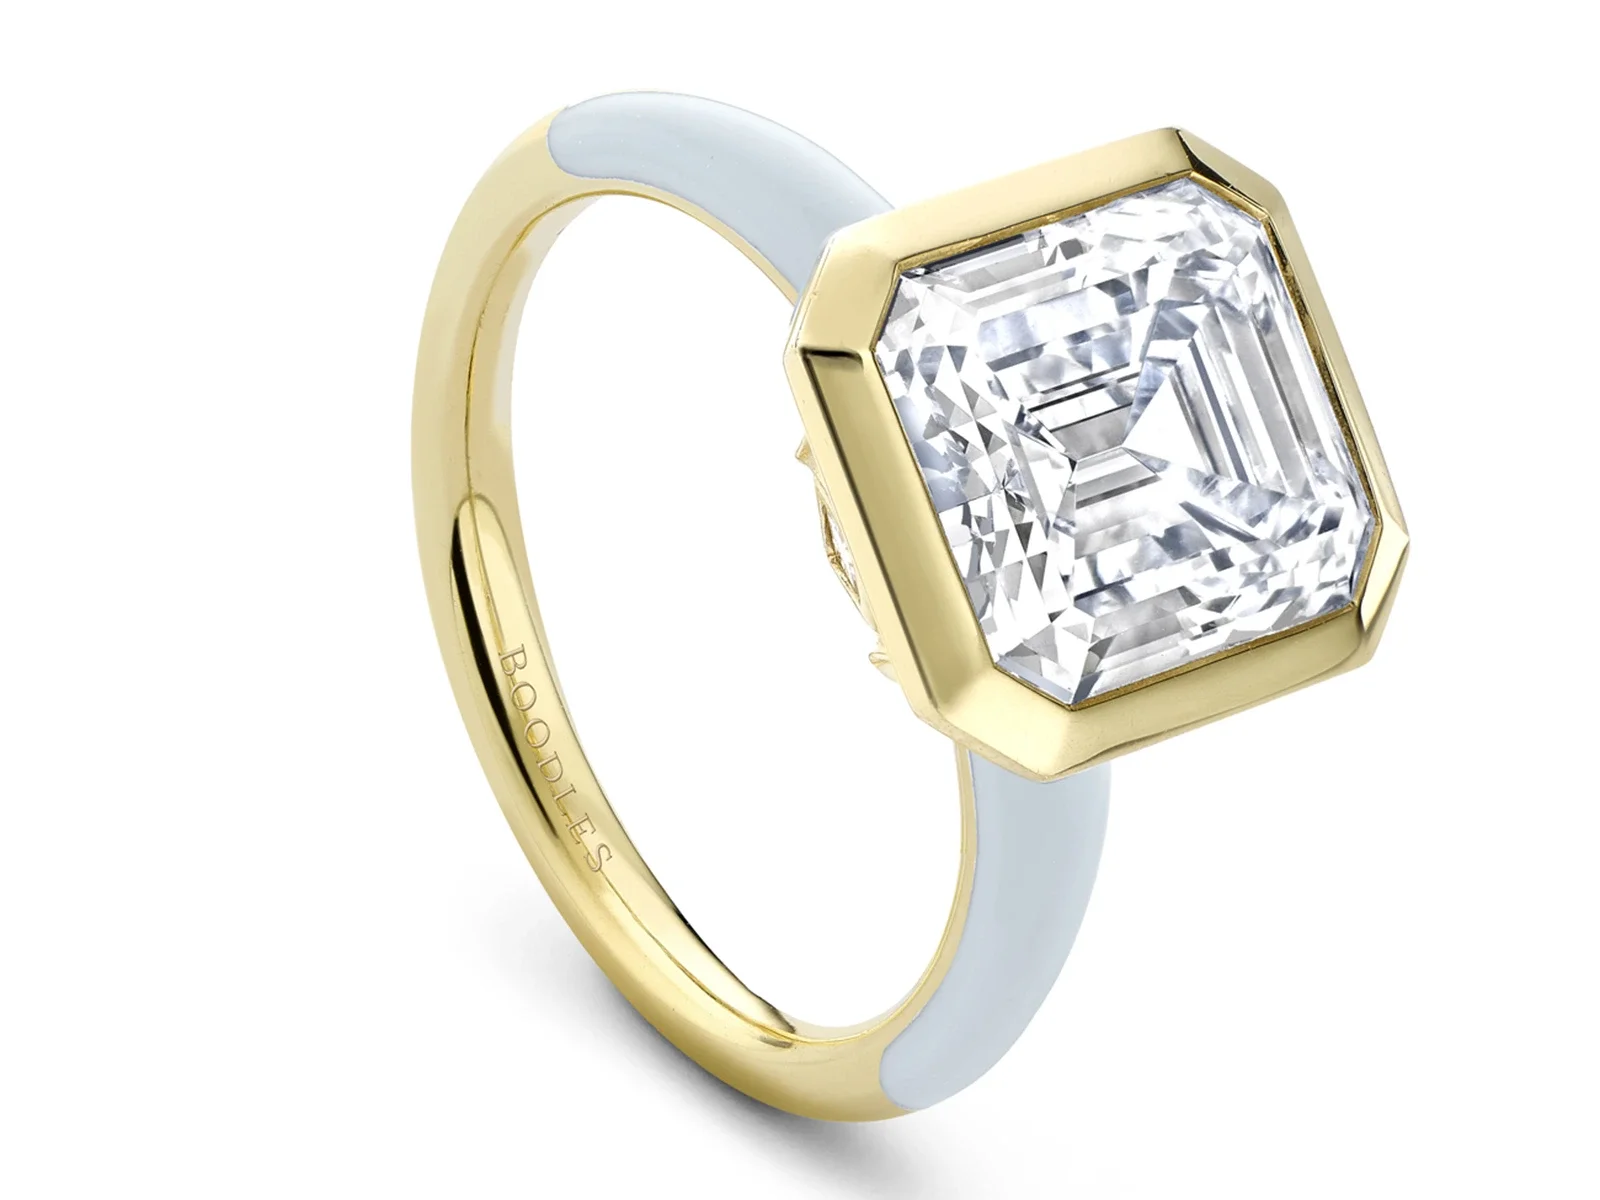 Boodles Florentine Large Blue Enamel luxury diamond engagement Ring